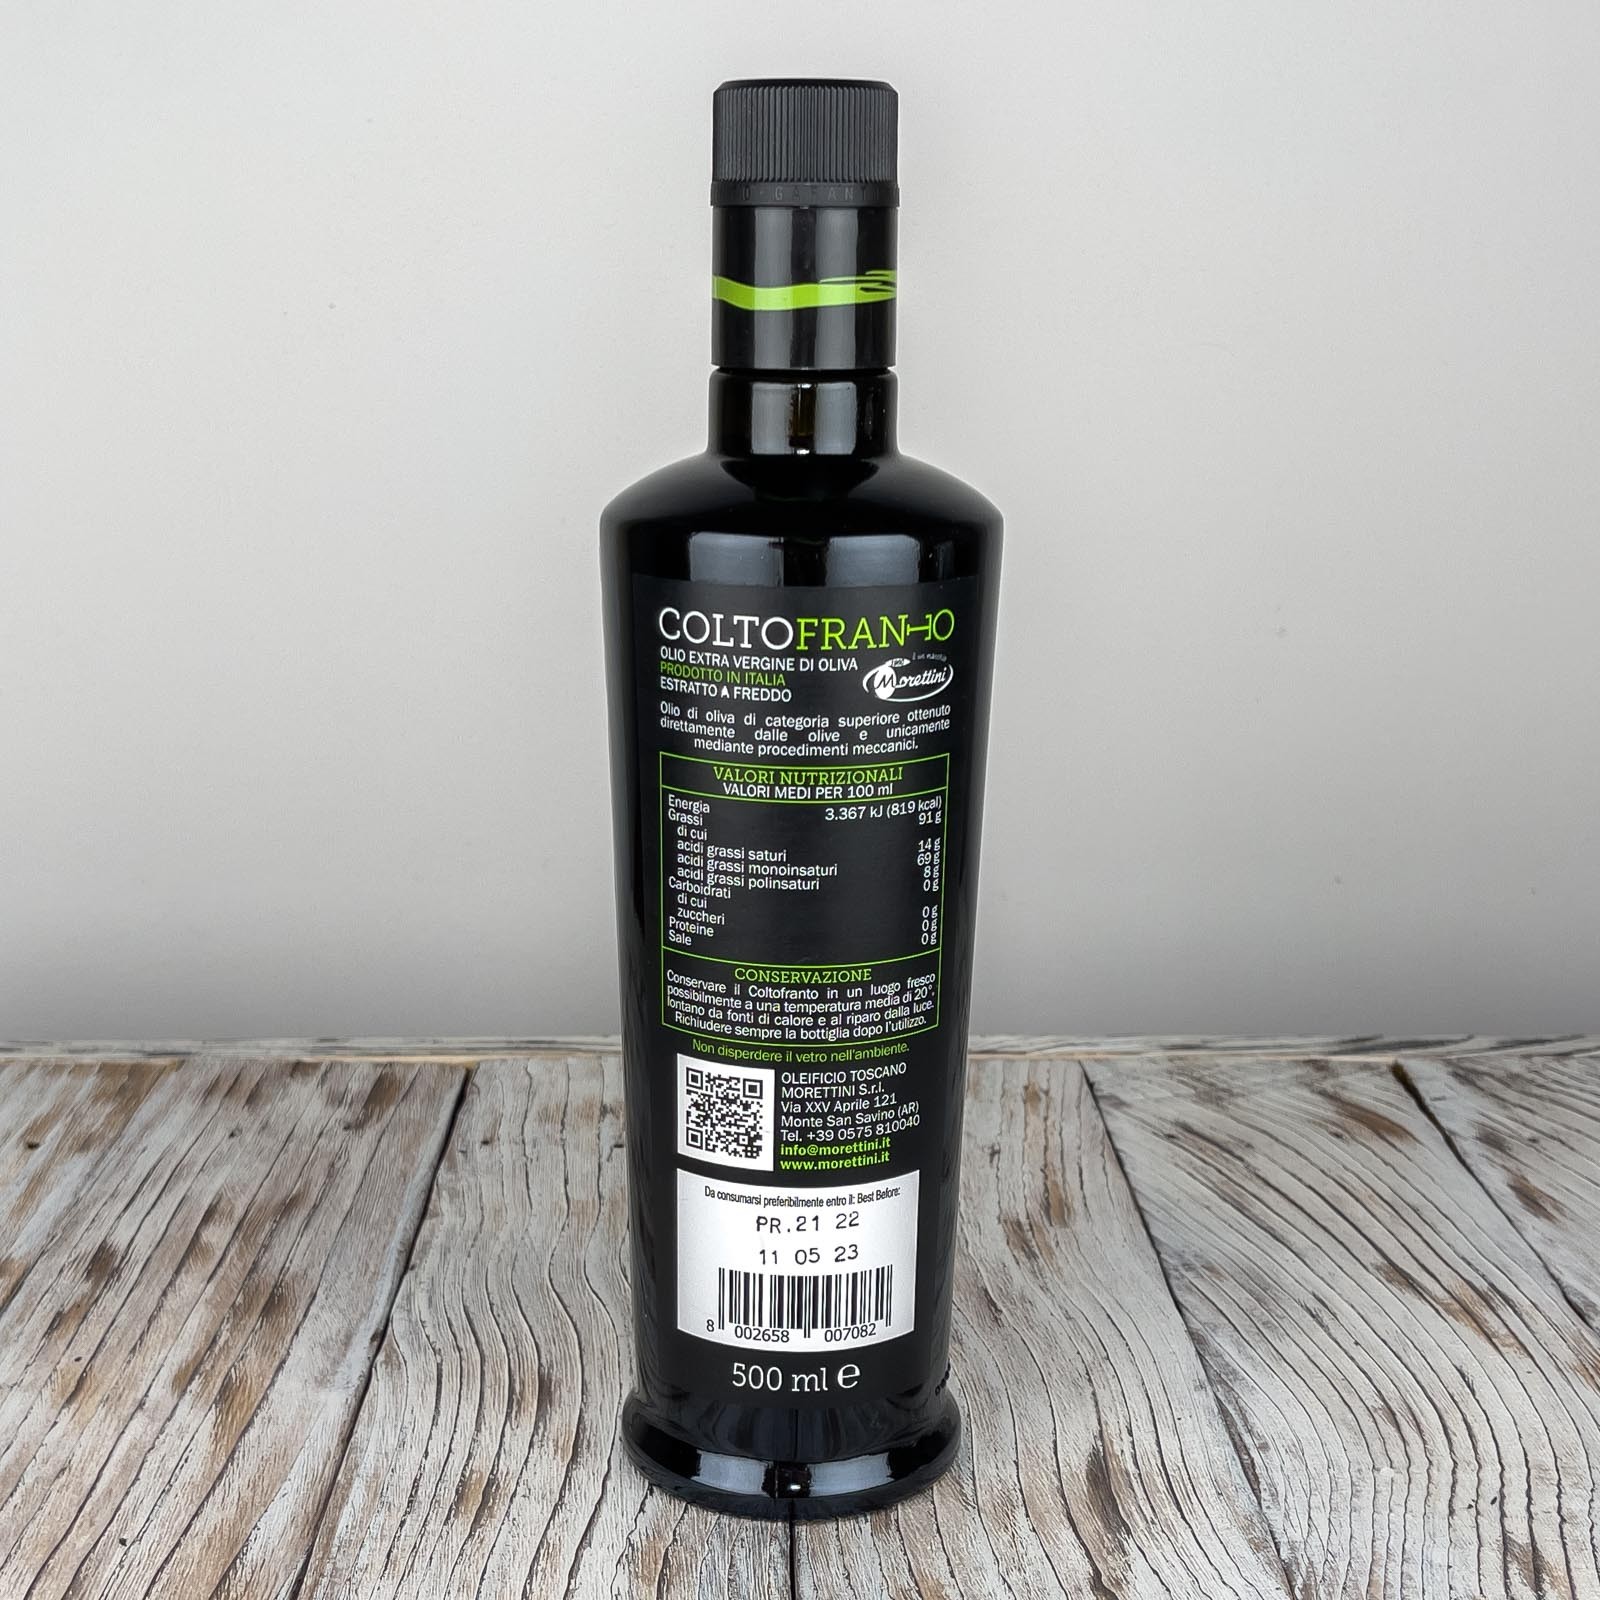 „Grand Cru Coltofranto”, 100% italienisches natives Olivenöl extra von höchster Qualität, gewonnen durch Kaltpressung von geernteten und sofort gepressten grünen Oliven - Produktionsjahr: 2021/2022.